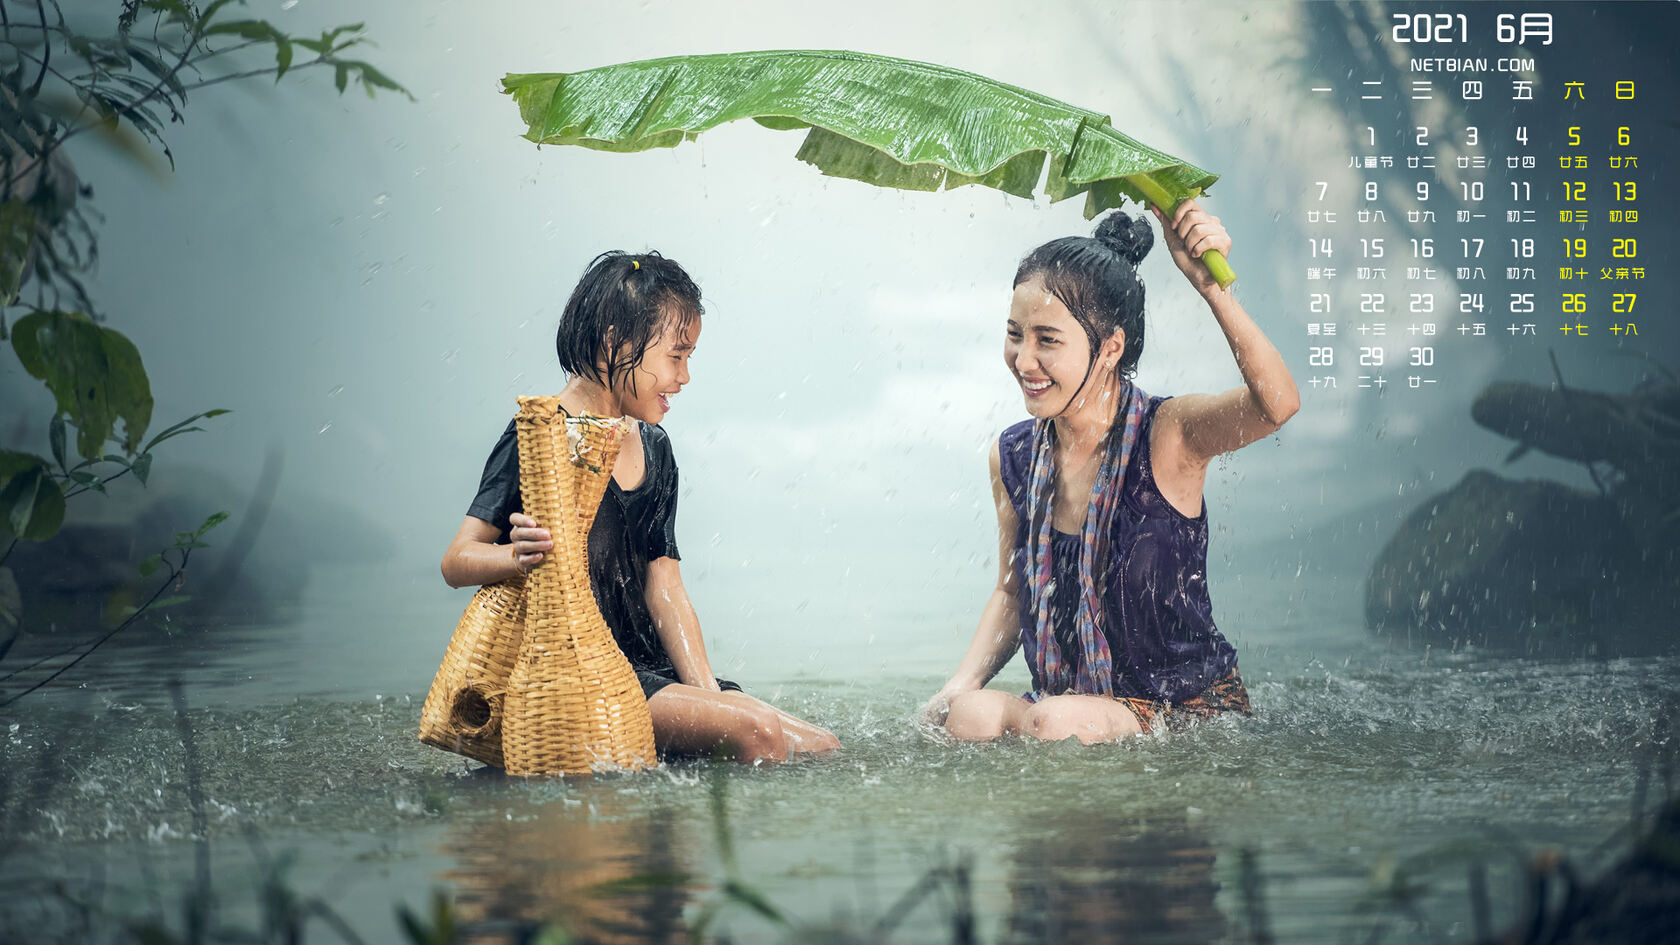 2021年6月日历图片，在大雨中捕鱼的两个越南少女，女孩壁纸图片